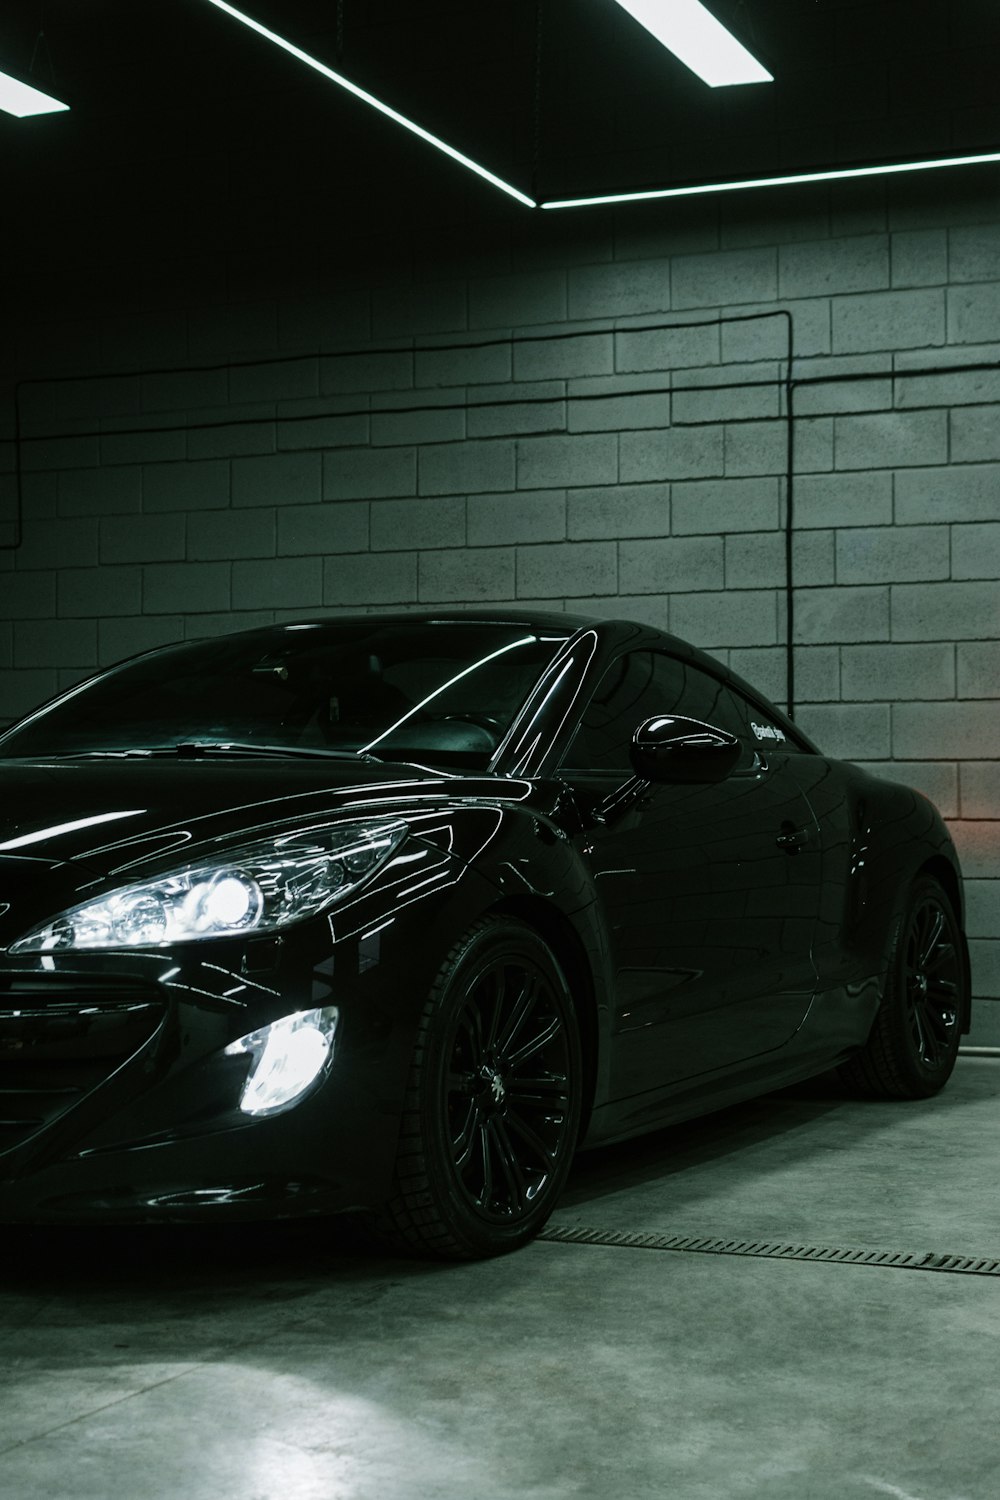 Un auto deportivo negro estacionado en un garaje